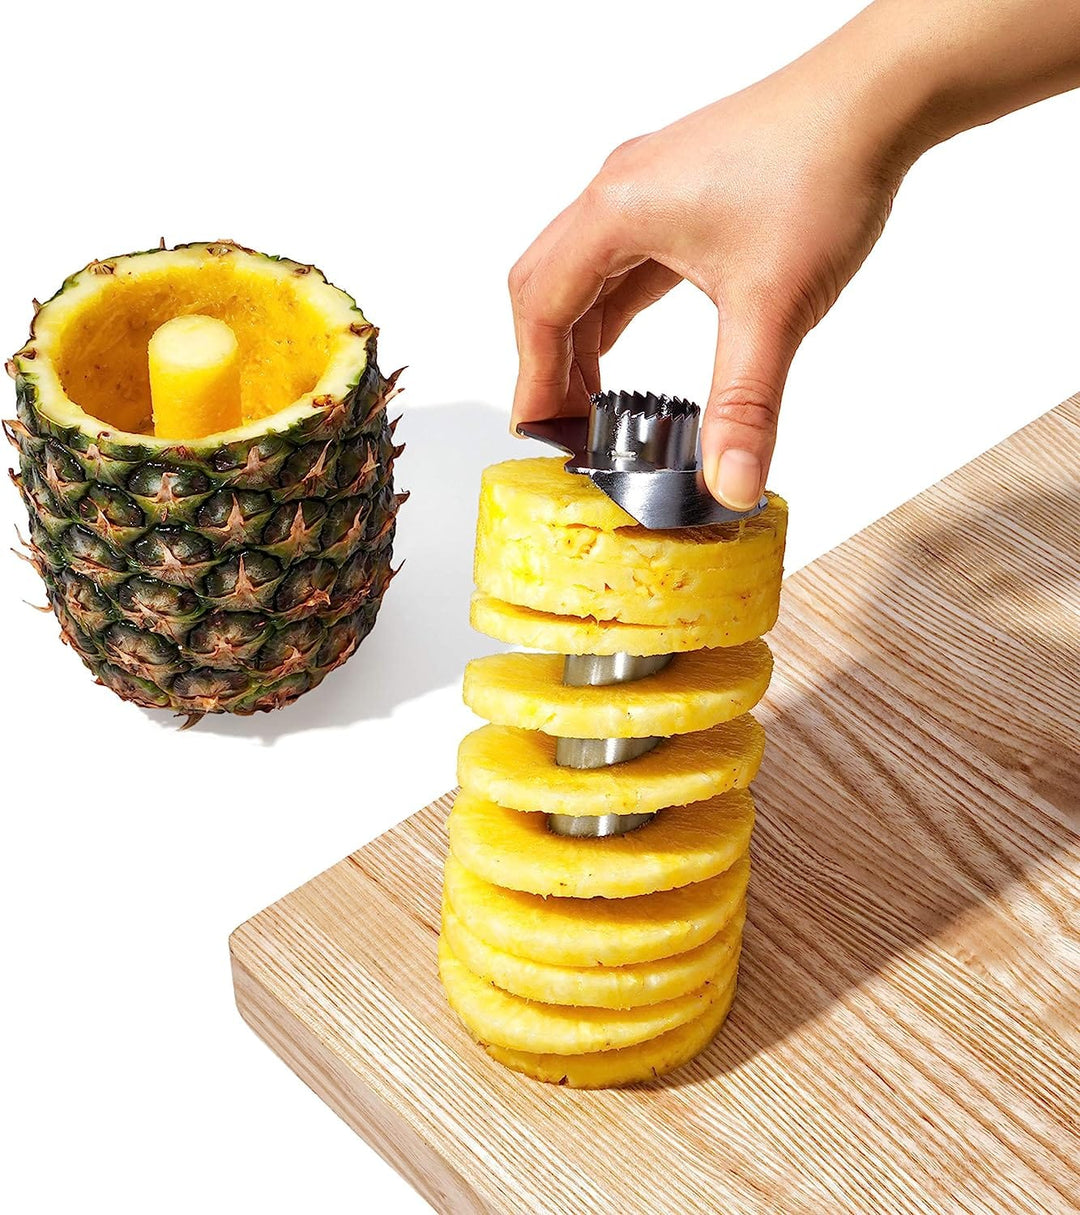 OXO Pineapple Corer & Slicer – Kooi Housewares